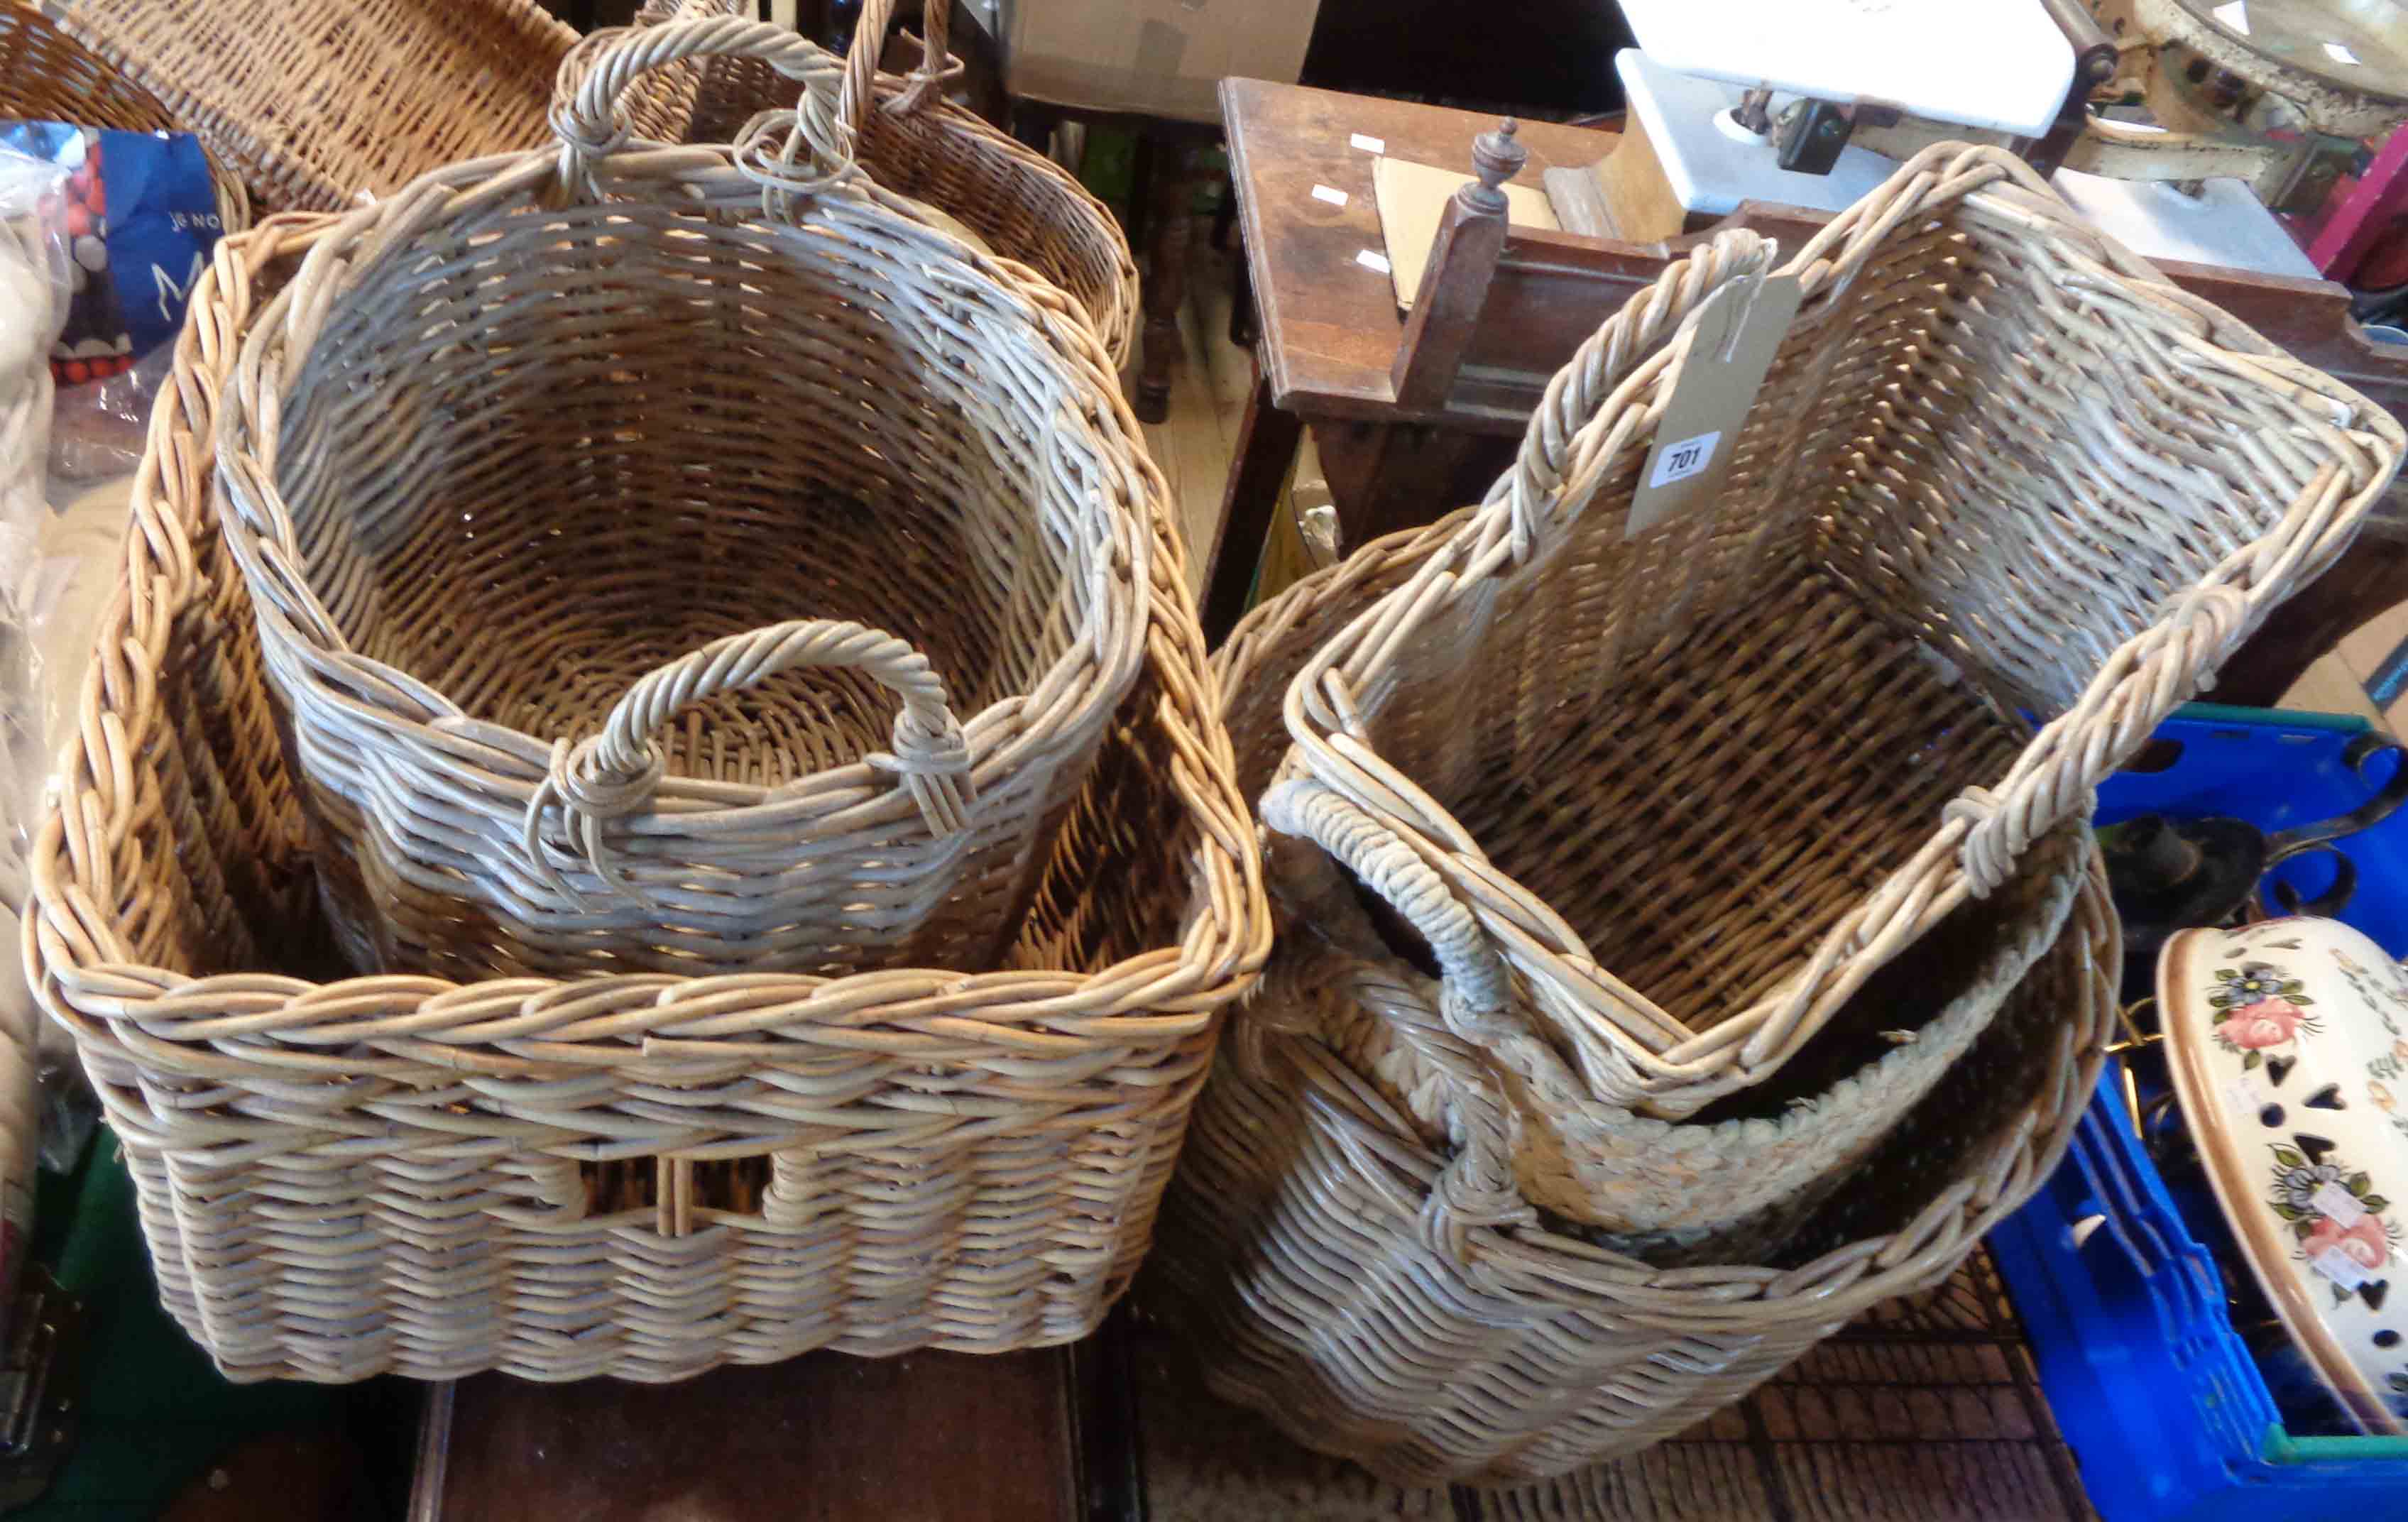 Five large wicker baskets